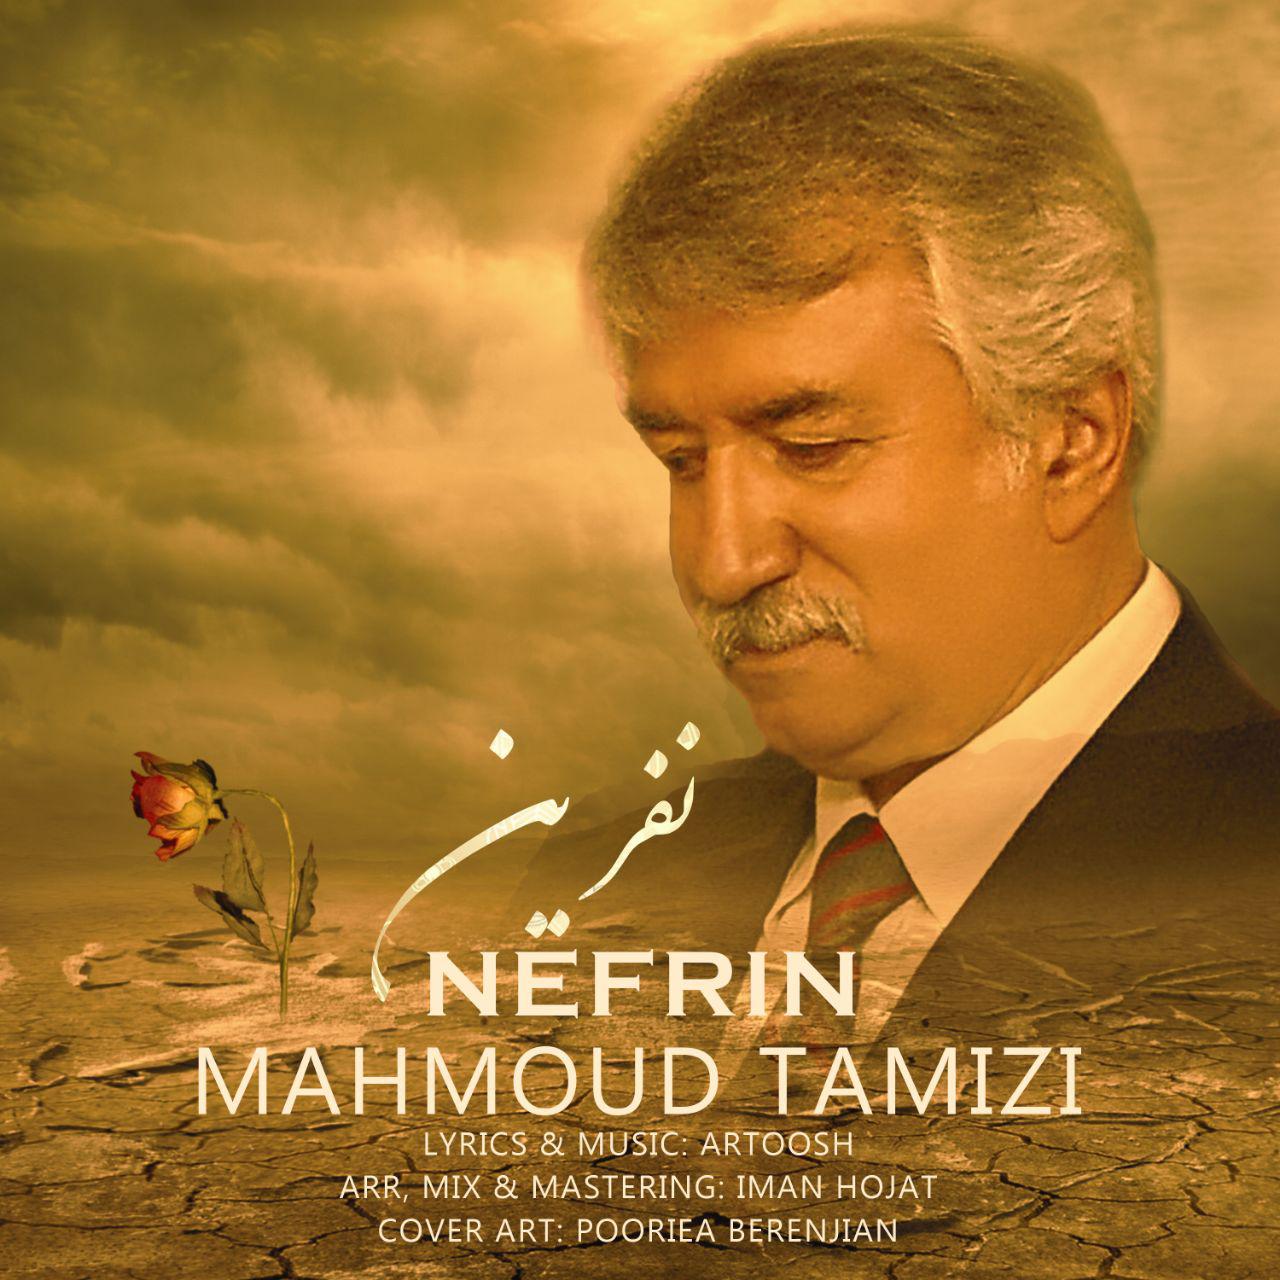  دانلود آهنگ جدید محمود تمیزی - نفرین | Download New Music By Mahmoud Tamizi - Nefrin